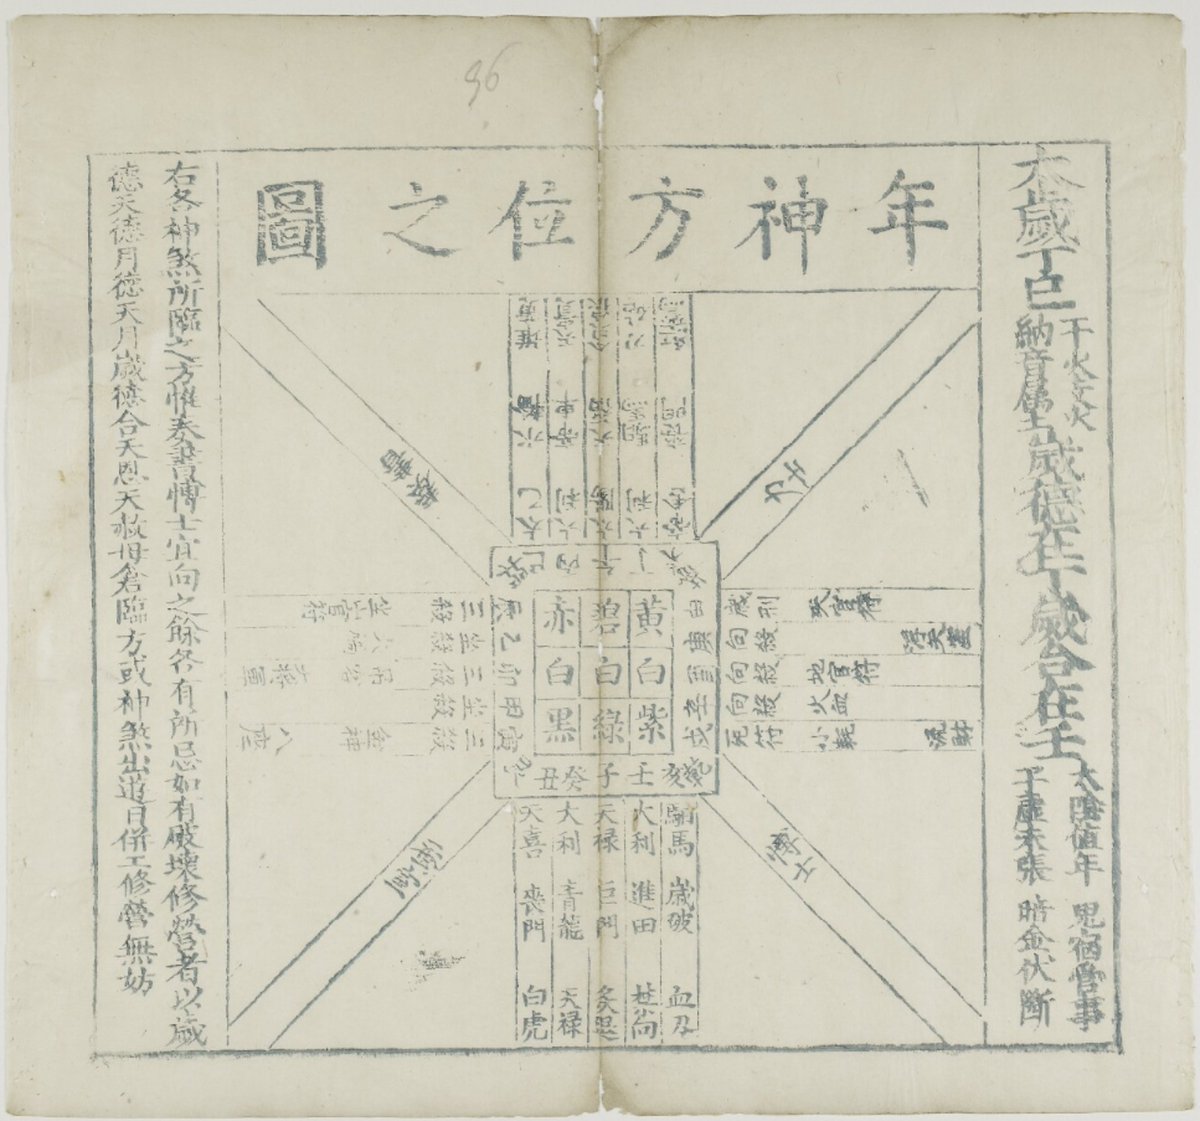 69. 大明永曆三十一年歲次丁巳大統曆  https://digital.bodleian.ox.ac.uk/inquire/p/e10965b3-8895-4379-adef-5db9f4549b6a A sad one if you know your chinese history. This almanac was issued by the Southern Ming, or what was left of the Ming Dynasty before it was wiped out by the Qing.  https://serica.blog/2012/01/02/southern-ming-calendars/